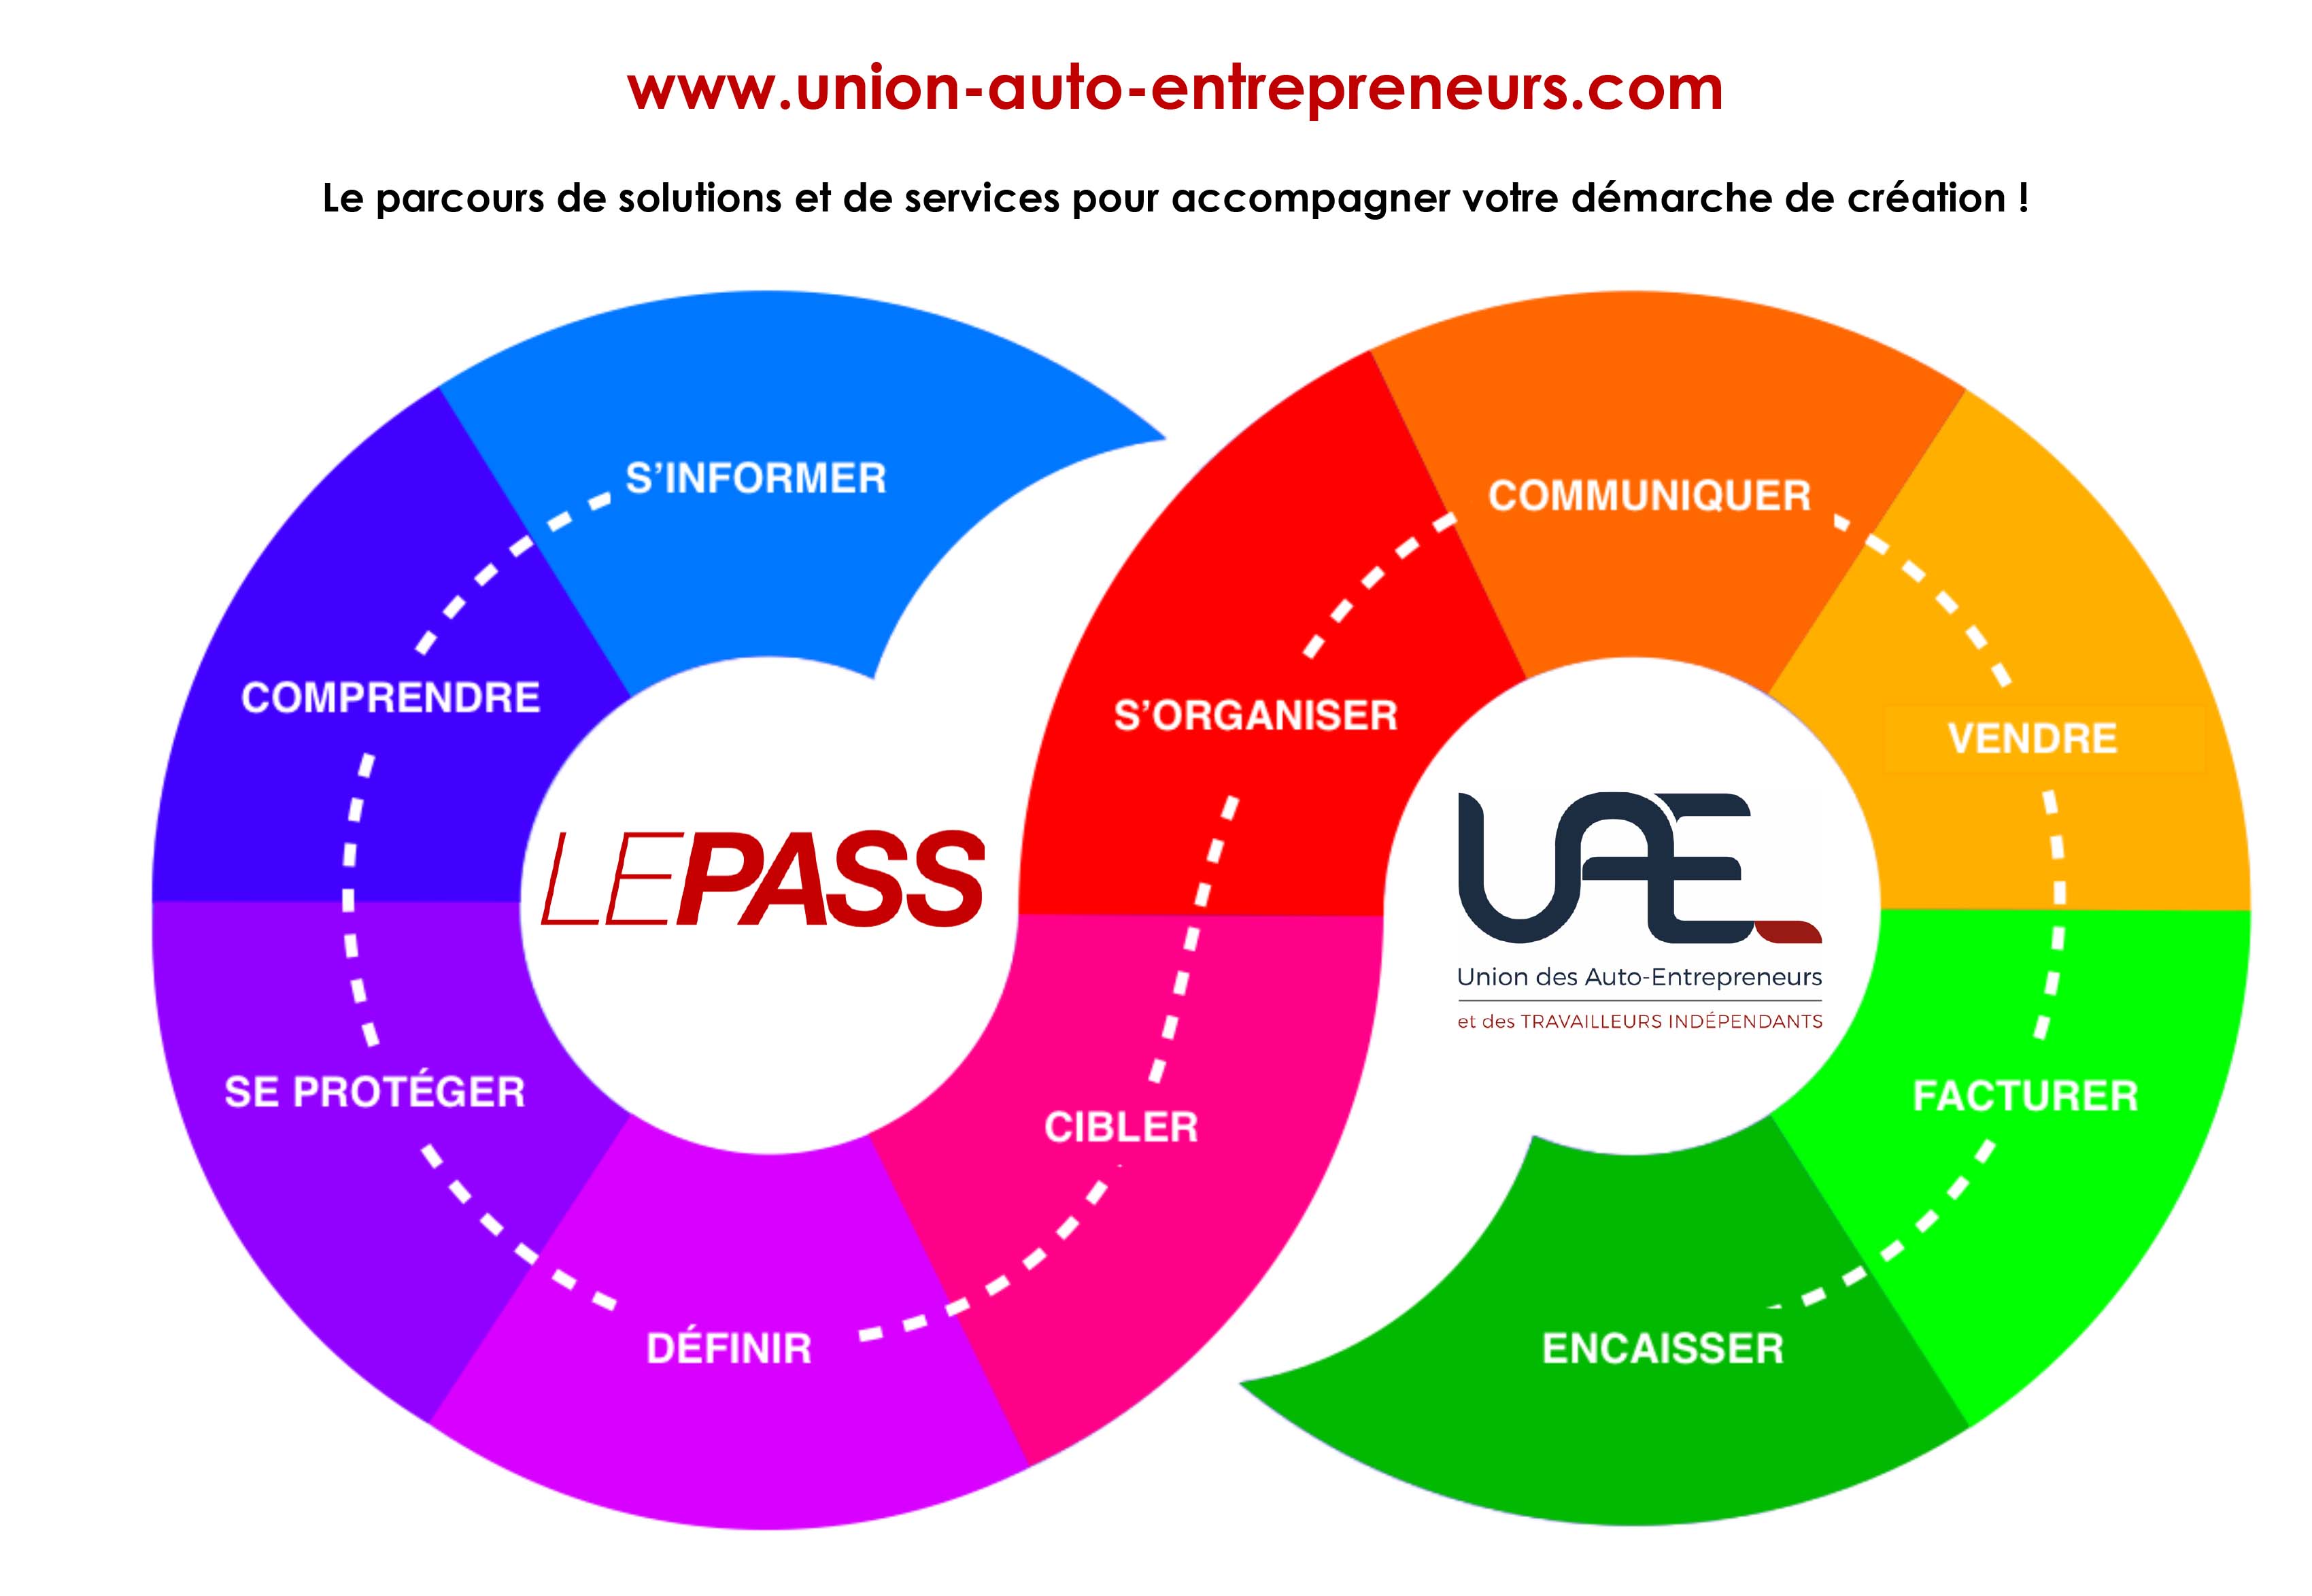 Union des Auto-Entrepreneurs